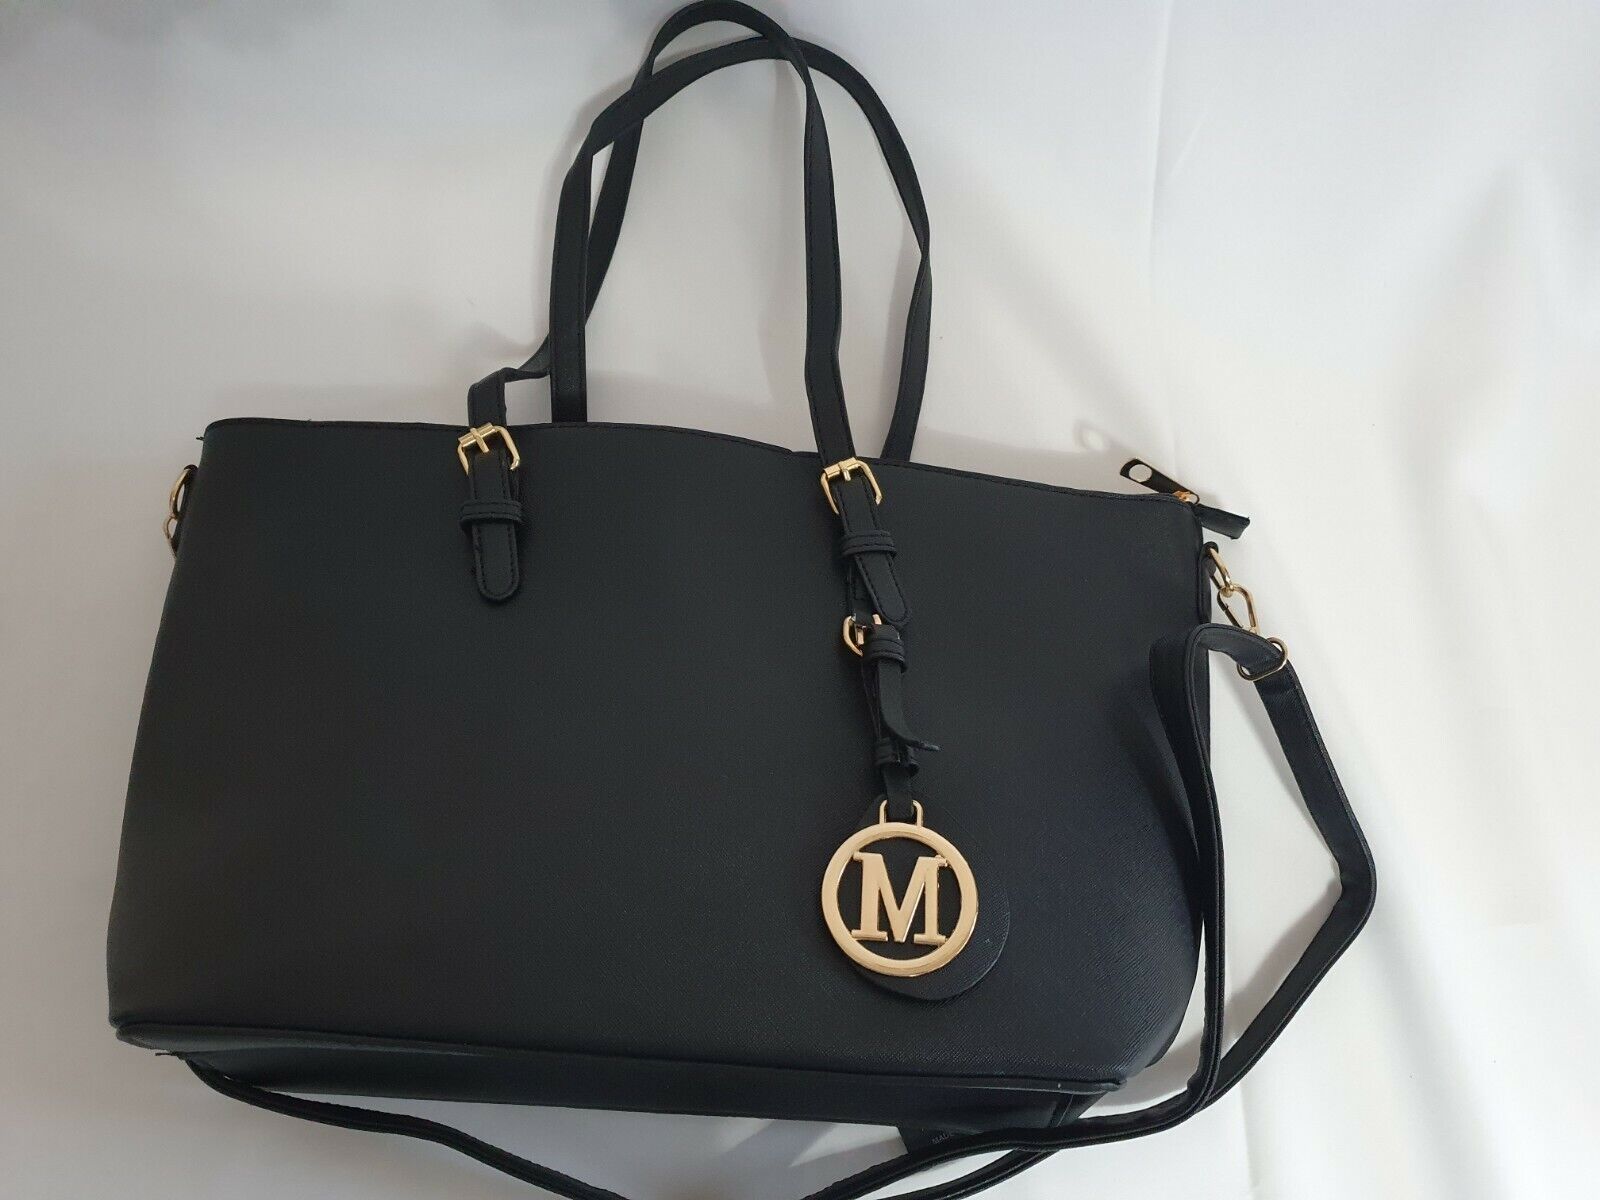 Damentasche Luxus XL Handtasche Schultertasche Damen Tasche Shopper schwarz neu